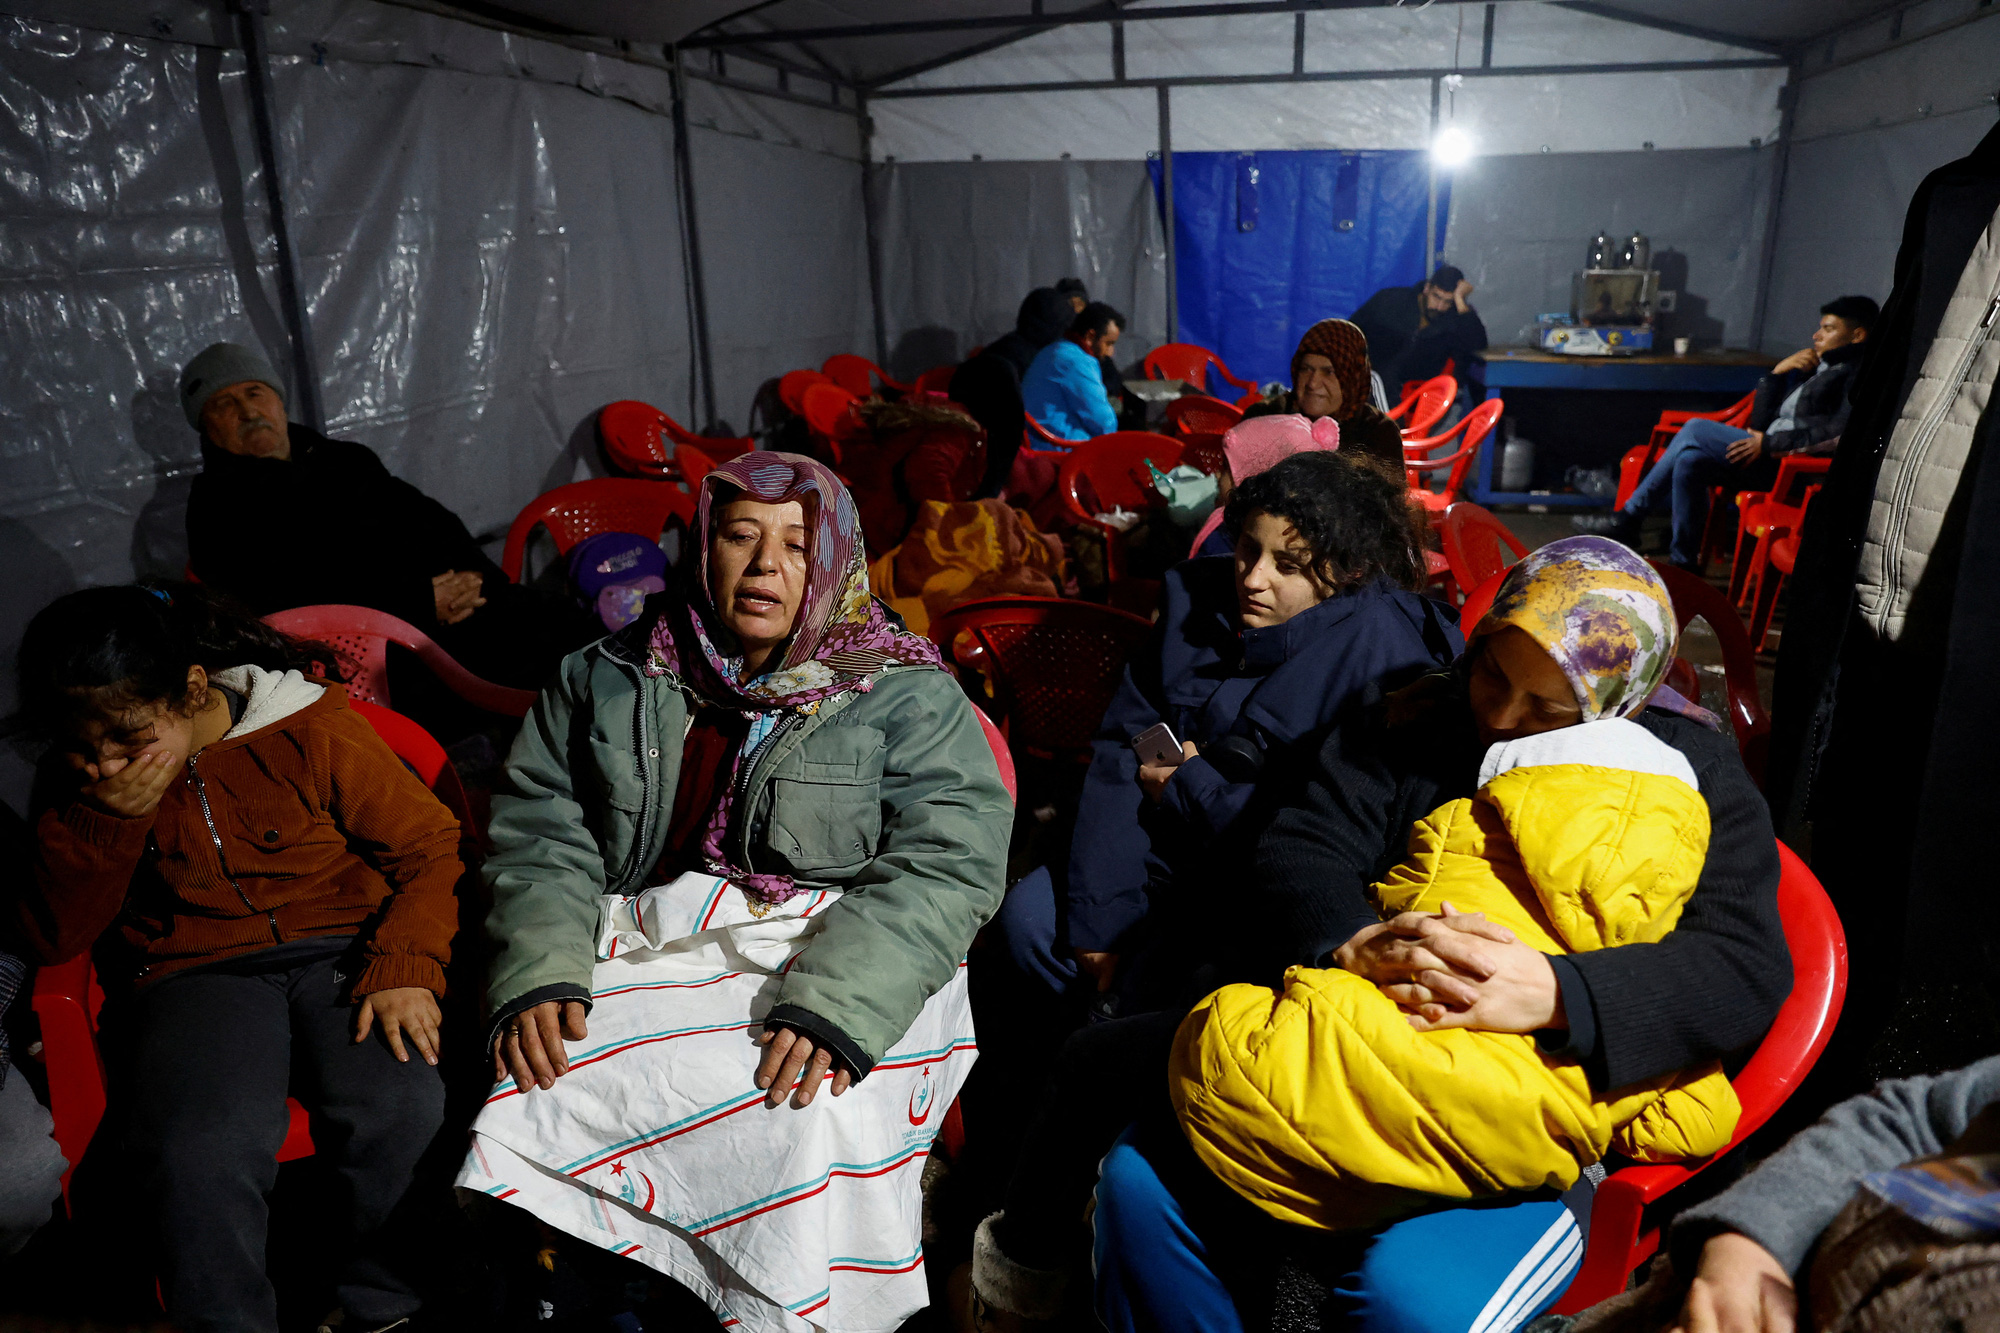 Động đất ở Thổ Nhĩ Kỳ: Không có người cứu các nạn nhân